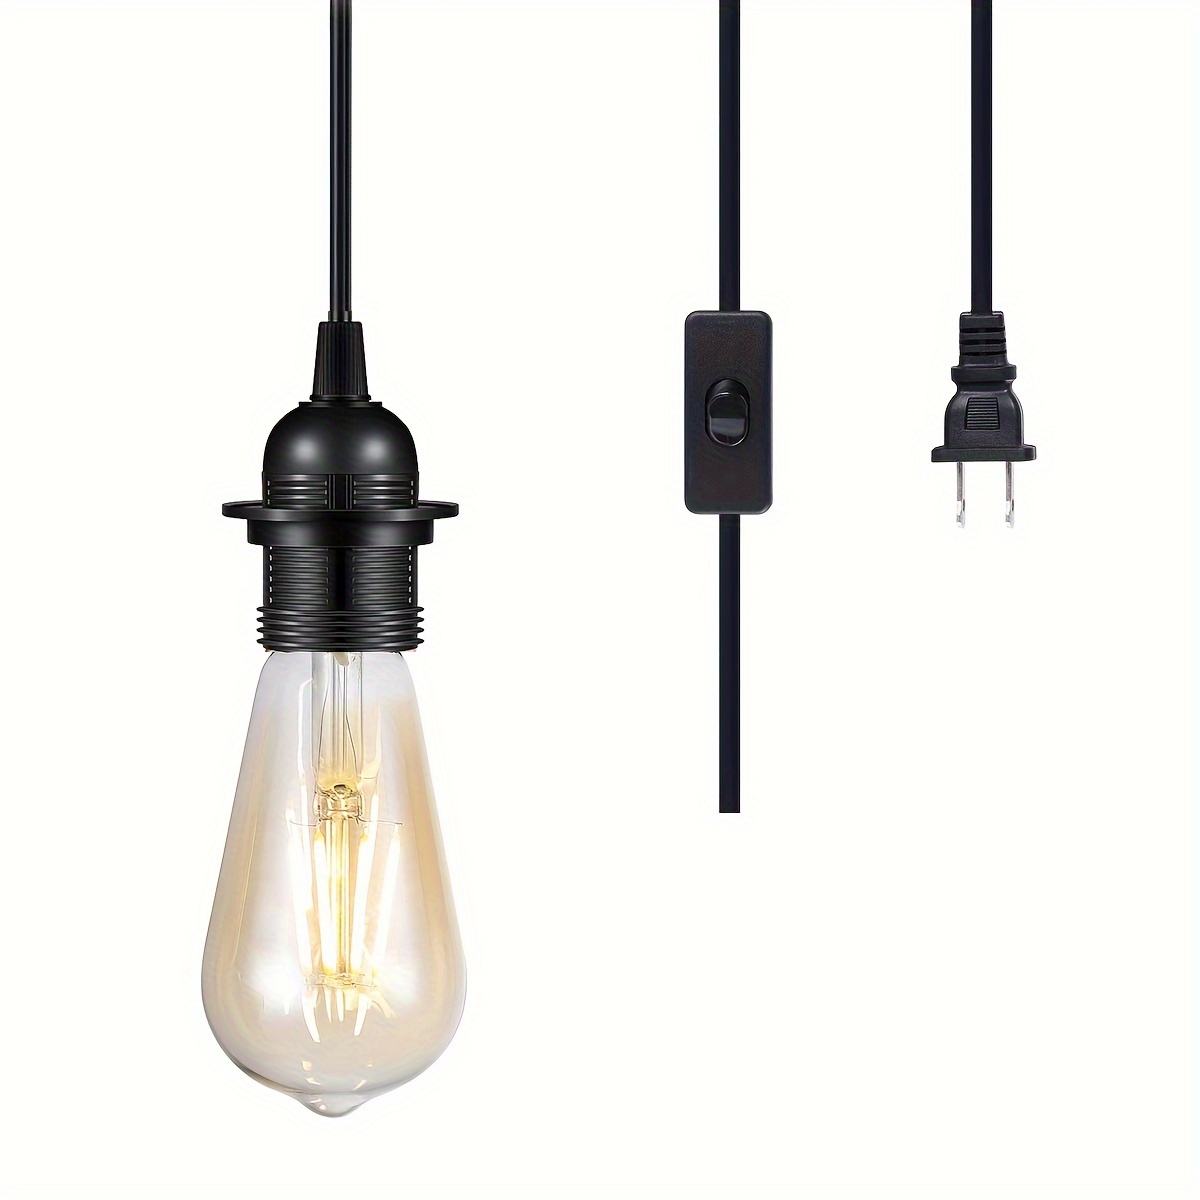  KAYYELAMP Juego de dos bombillas LED de atenuación continua, sin  cable, recargables y sin cable, incluye lámpara de pared de estilo moderno,  lámpara de pared de metal gris para leer dormitorio